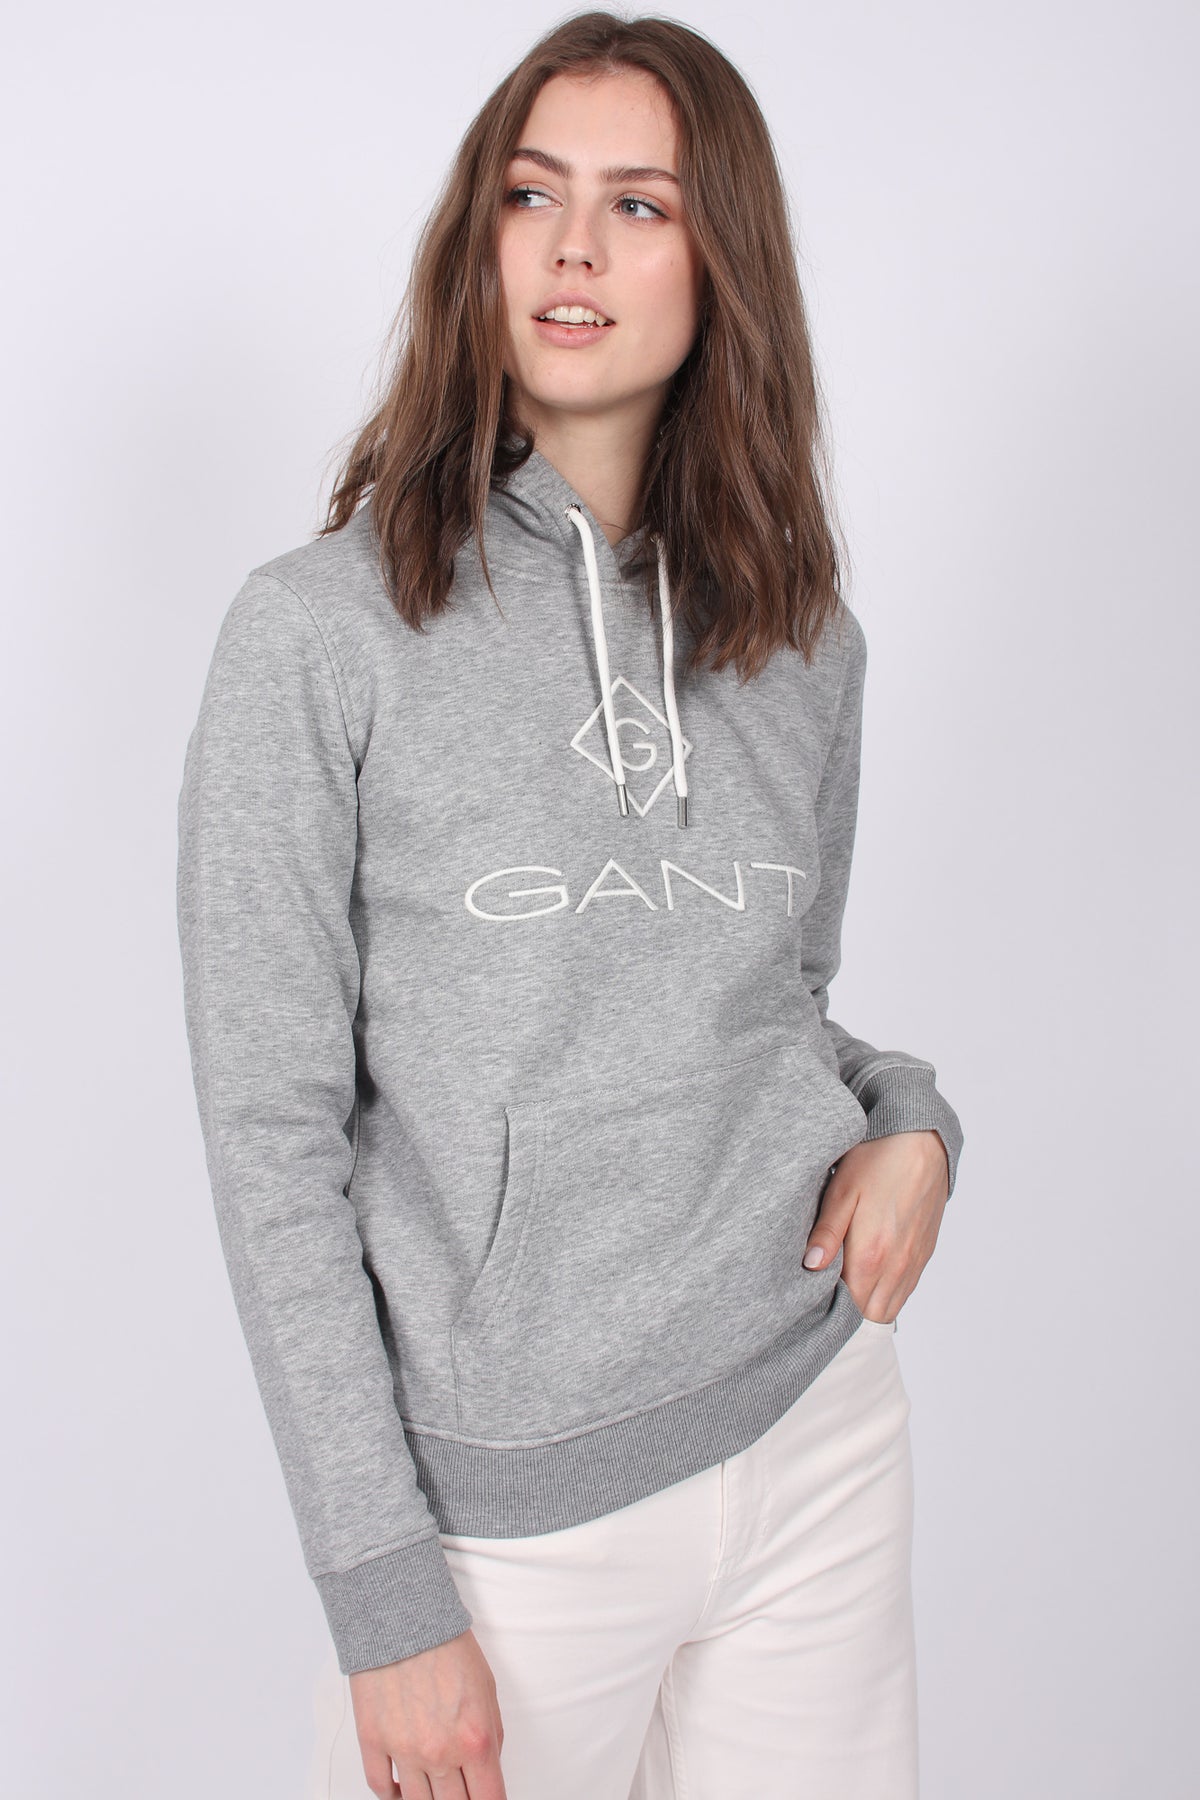 Gant Lock Up Sweat Hoodie - Grey Melange - GANT - Gensere - VILLOID.no